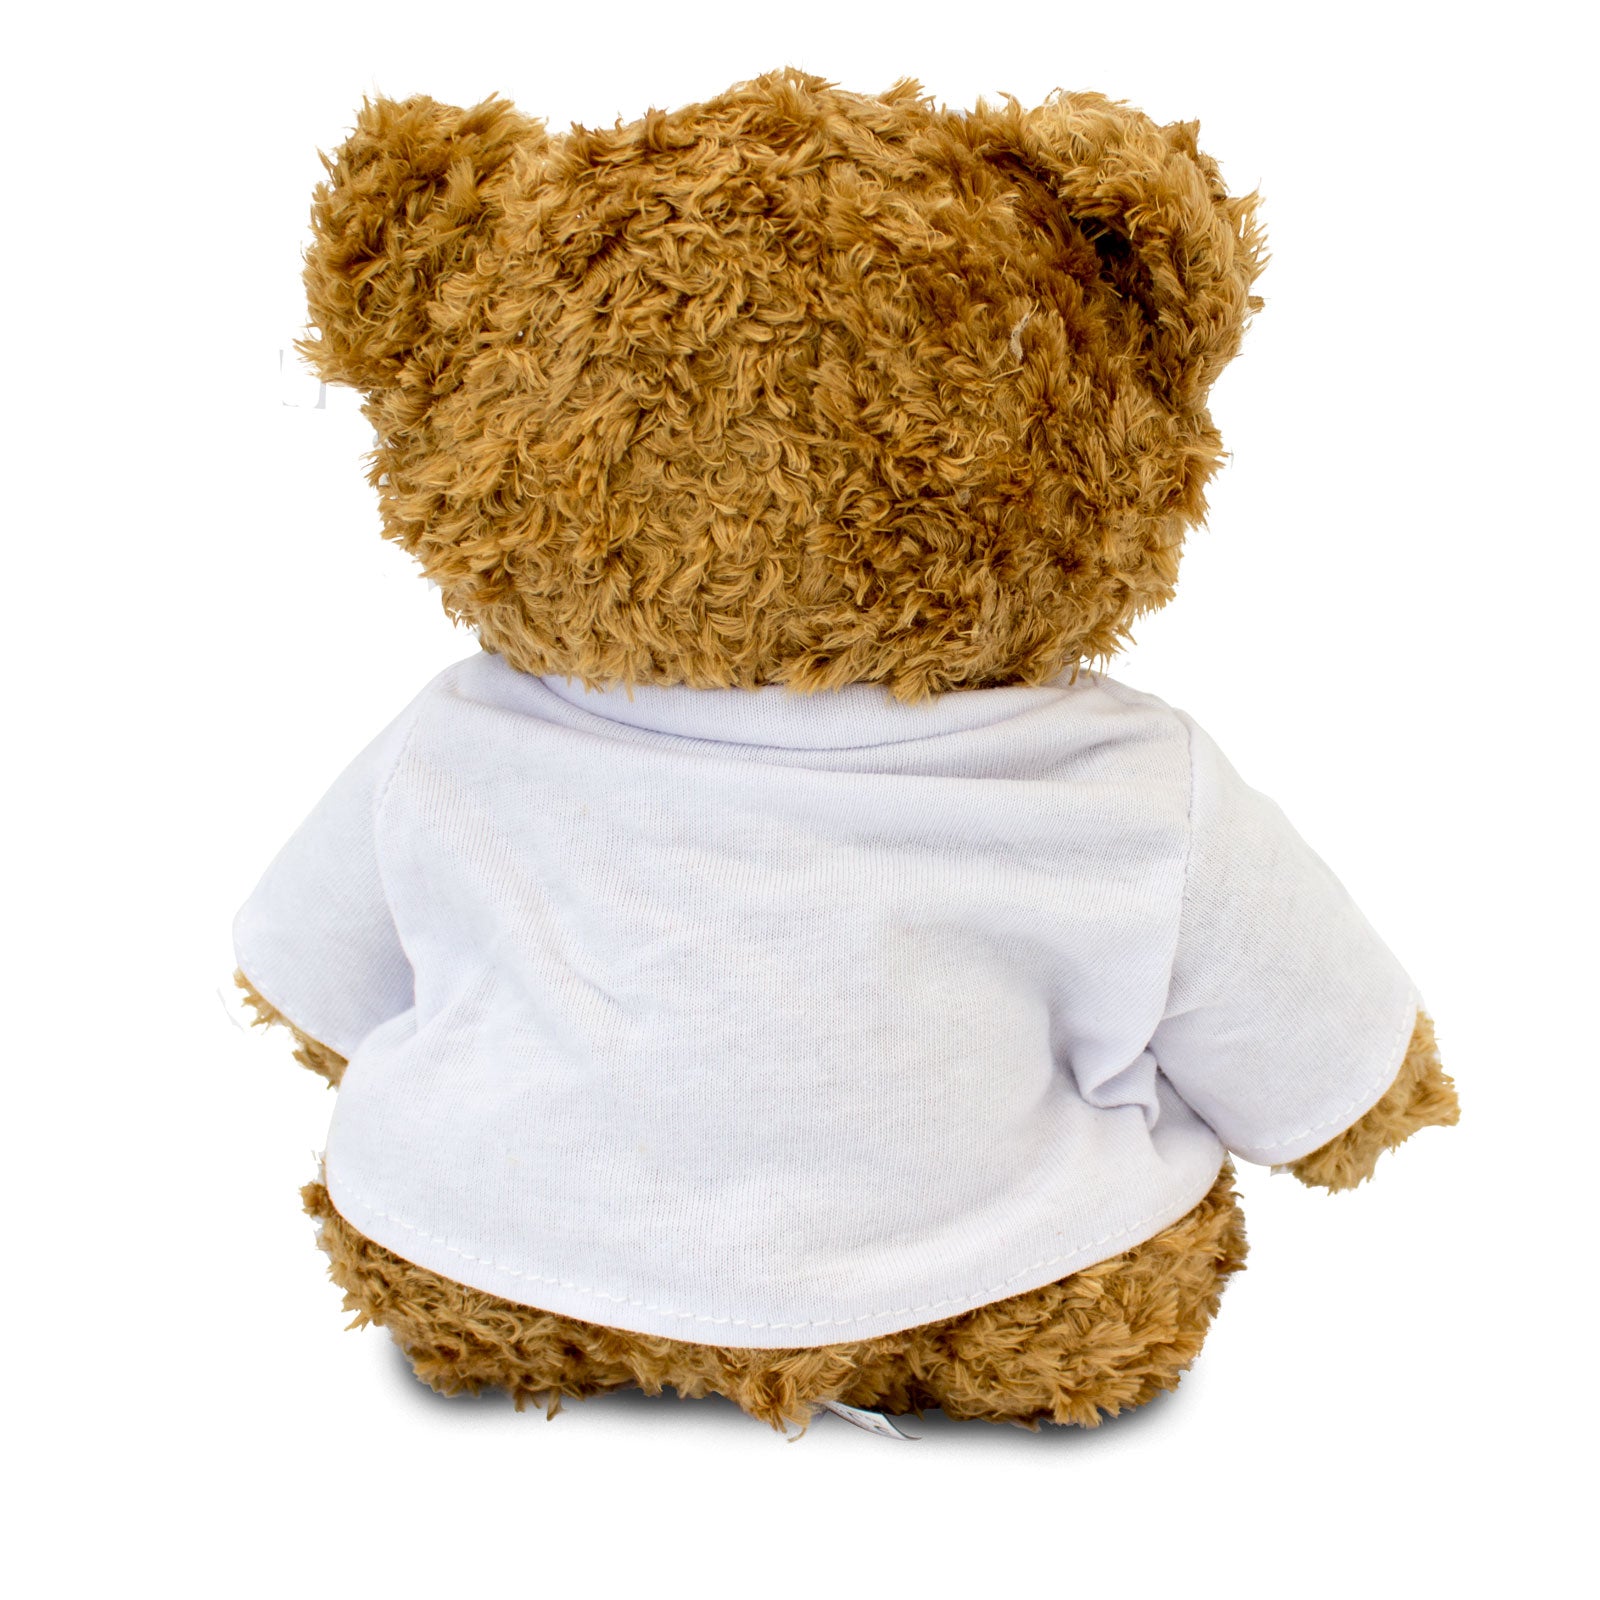 Get Well Soon Harvey - Teddy Bear